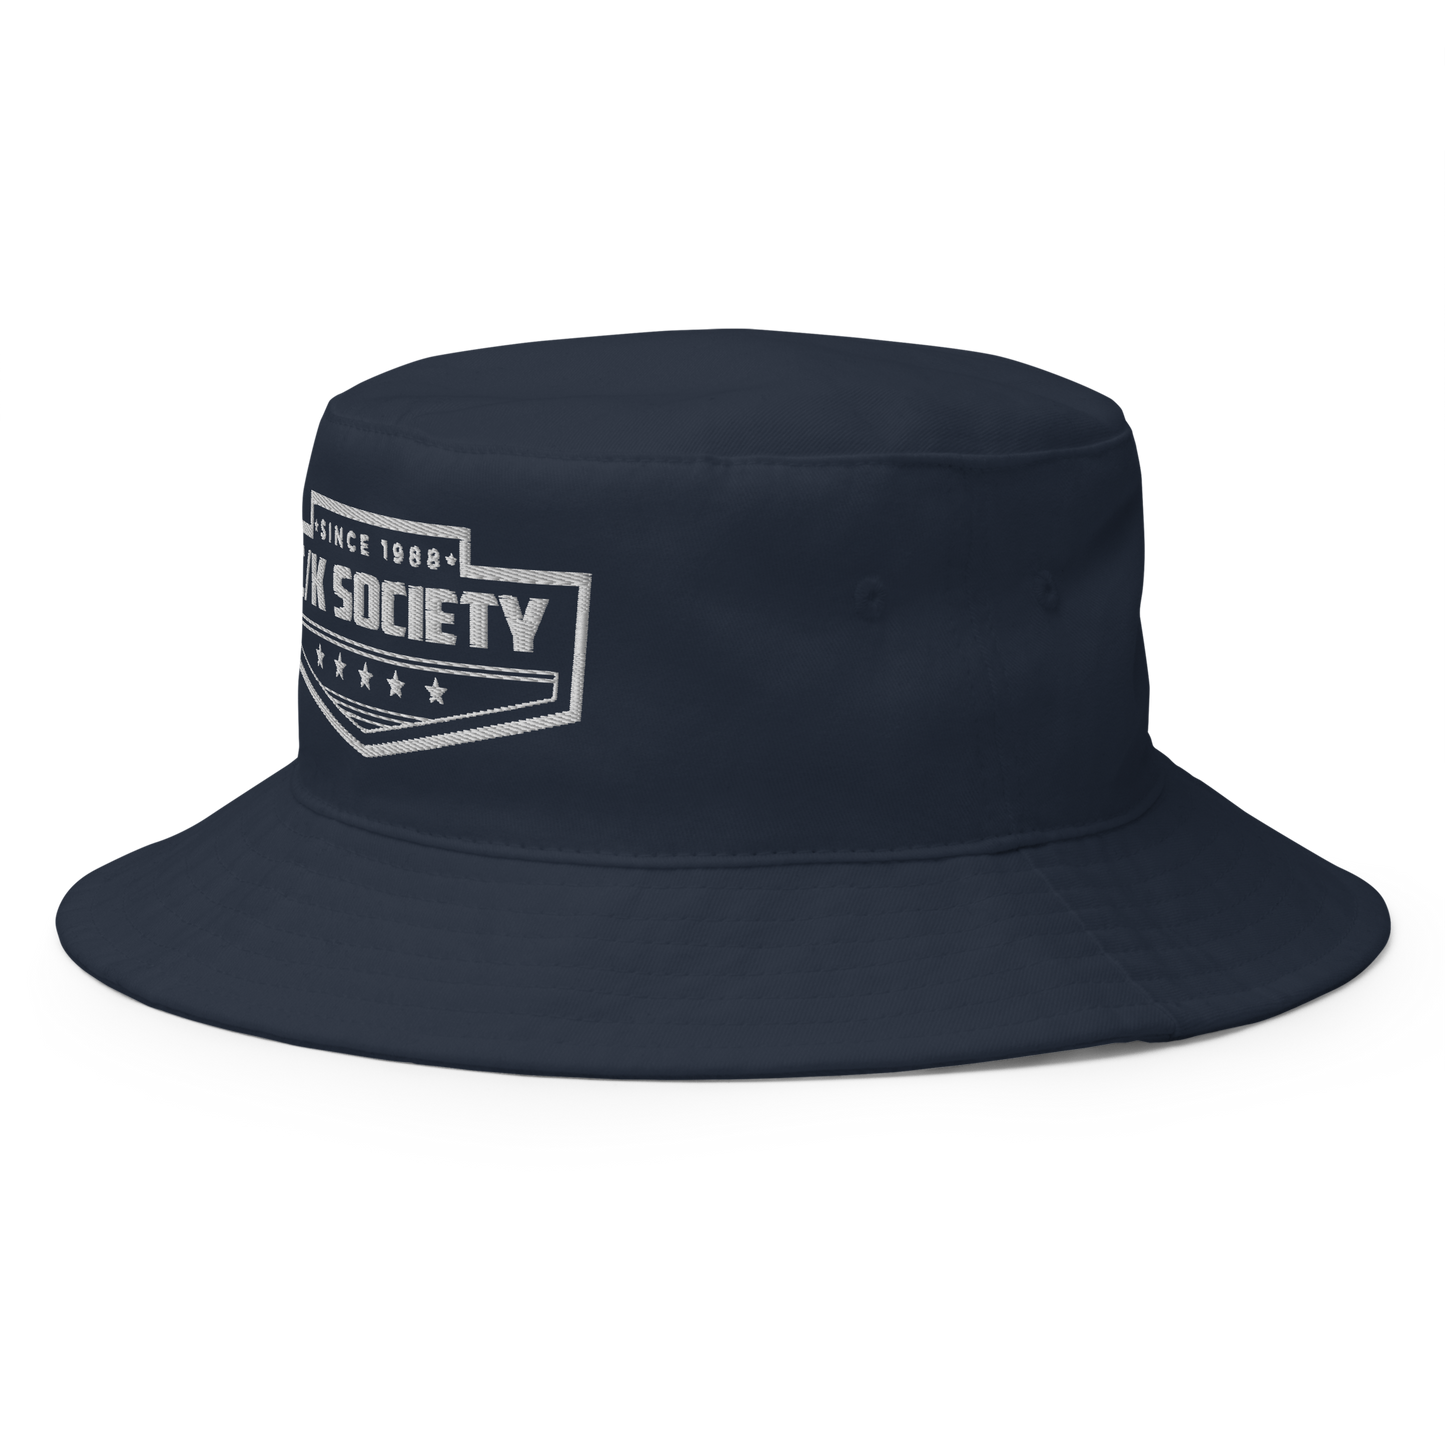 C/K Society Chevrolet, GMC OBS Bucket Hat